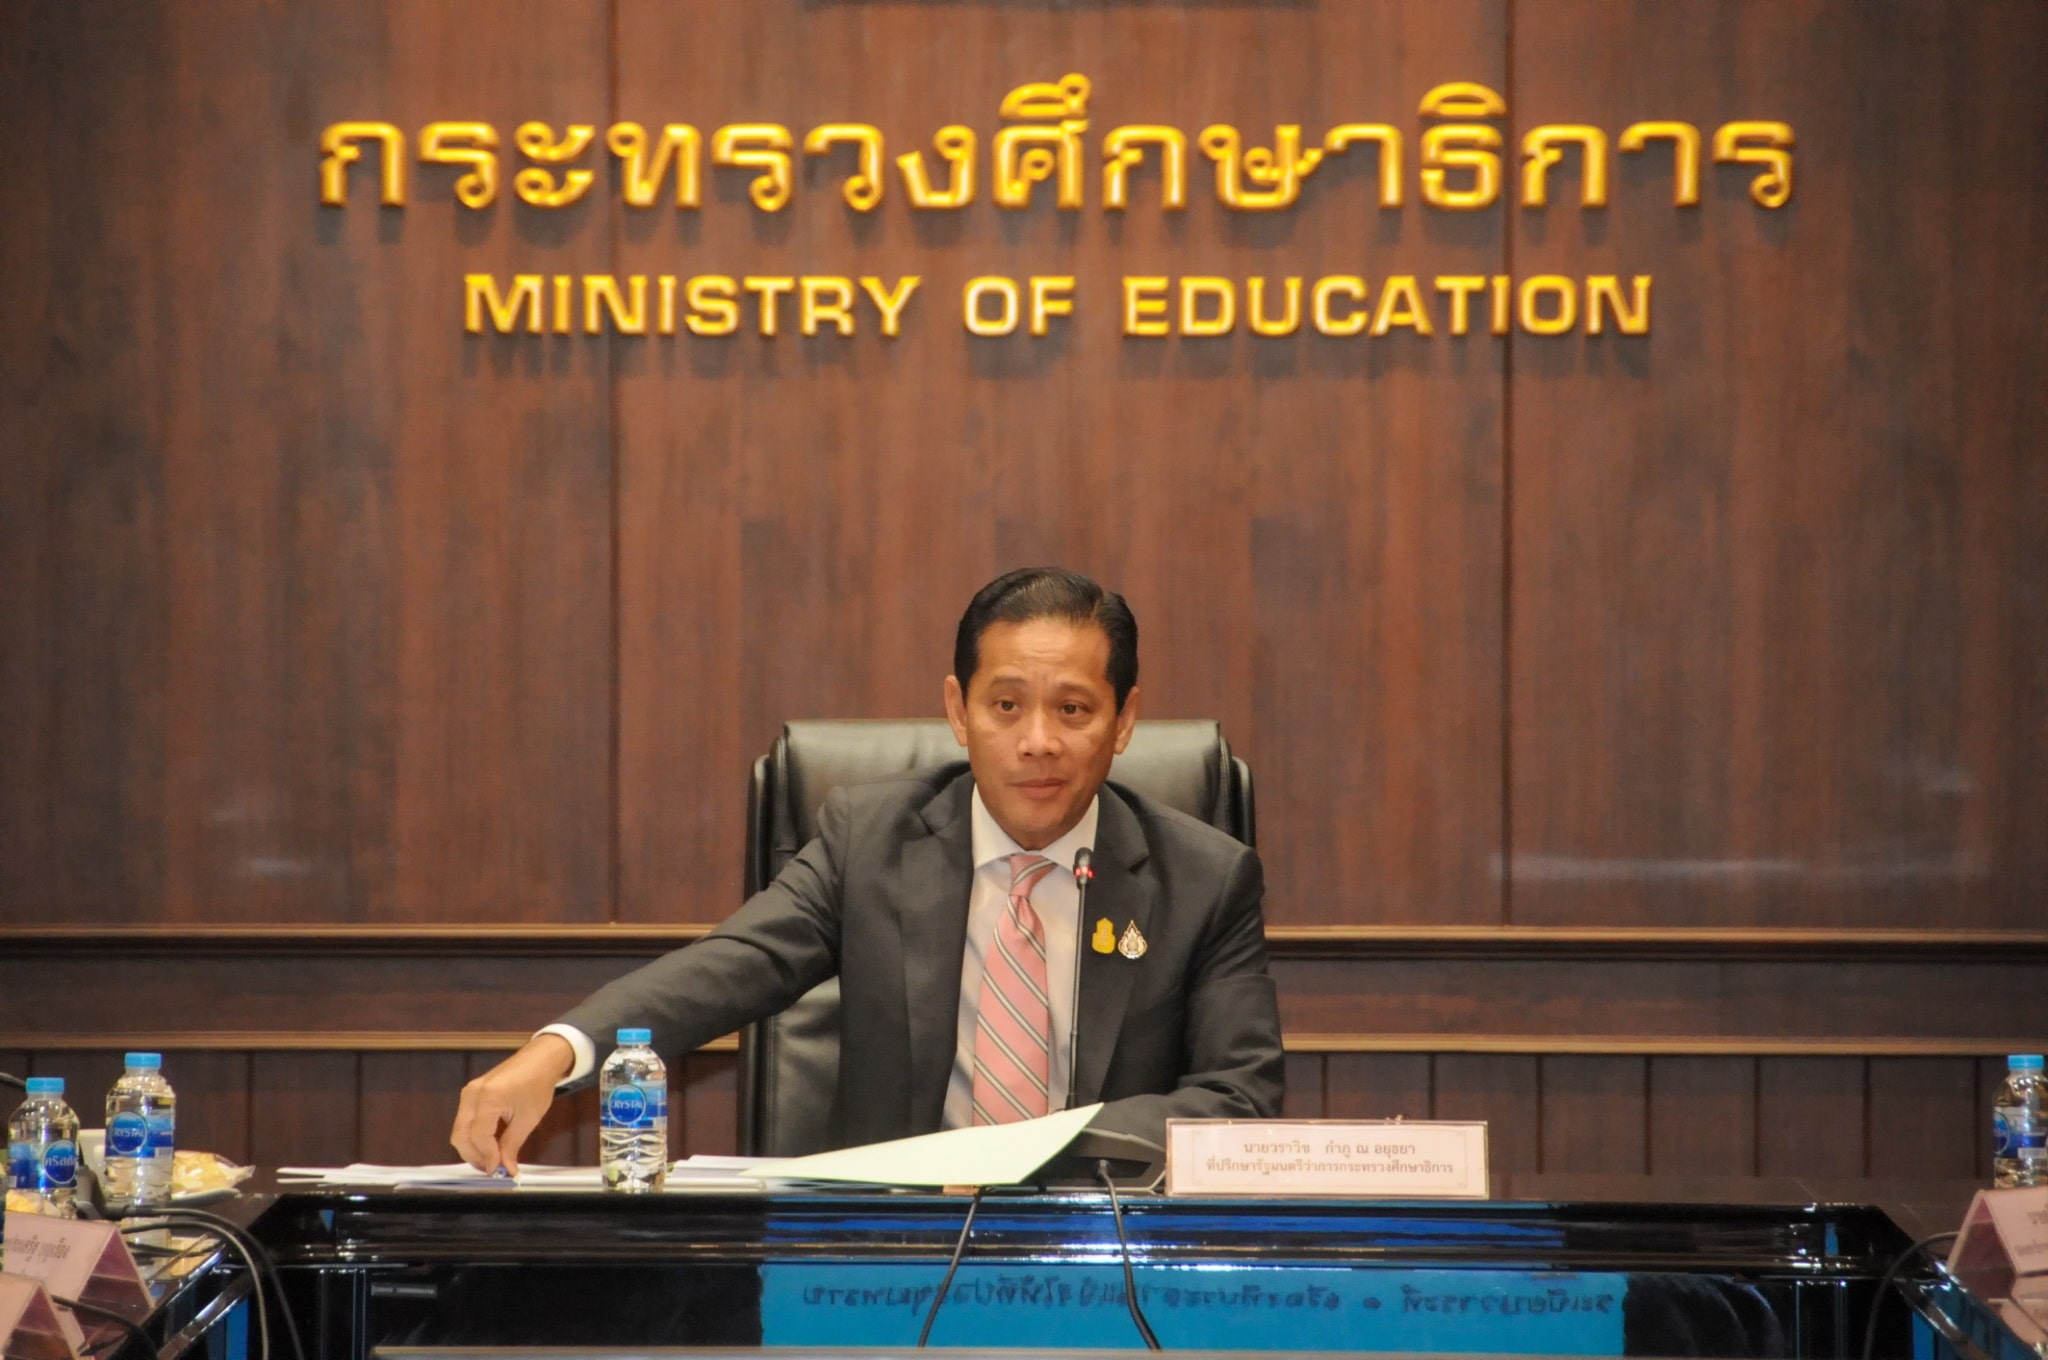 ศธ.จัดทำร่างนโยบายและจุดเน้น ปีงบประมาณ 2565 “ยกกำลังสองการศึกษาไทย (Thailand Education Eco-System : TE2S) สู่ความเป็นเลิศ”